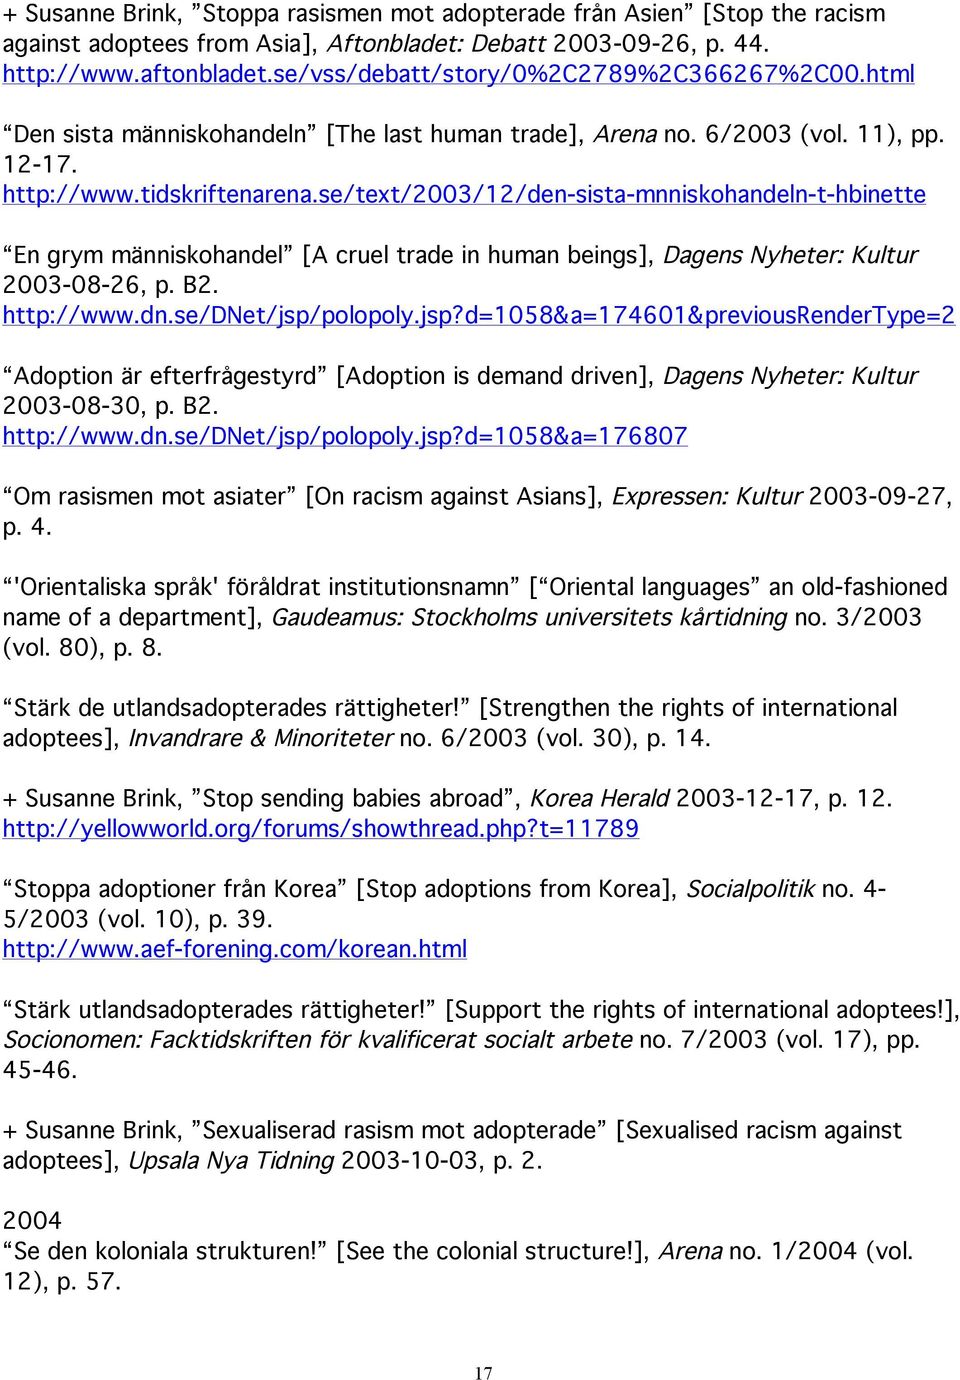 se/text/2003/12/den-sista-mnniskohandeln-t-hbinette En grym människohandel [A cruel trade in human beings], Dagens Nyheter: Kultur 2003-08-26, p. B2. http://www.dn.se/dnet/jsp/